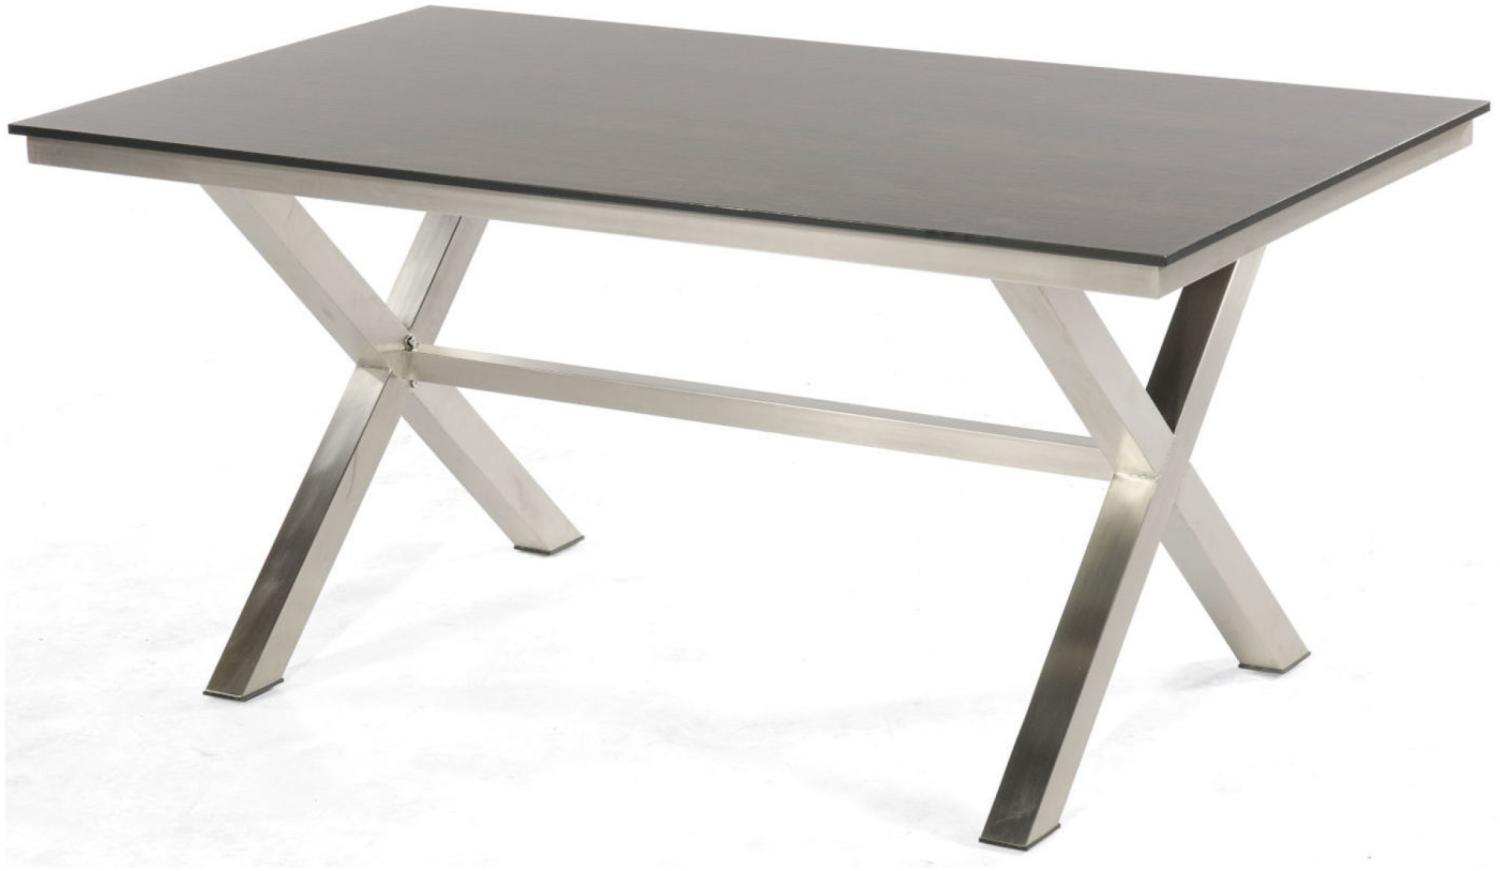 Sonnenpartner Gartentisch Base-Spectra 160x90 cm Edelstahl Tischsystem Tischplatte Solid Old Teak natur Bild 1